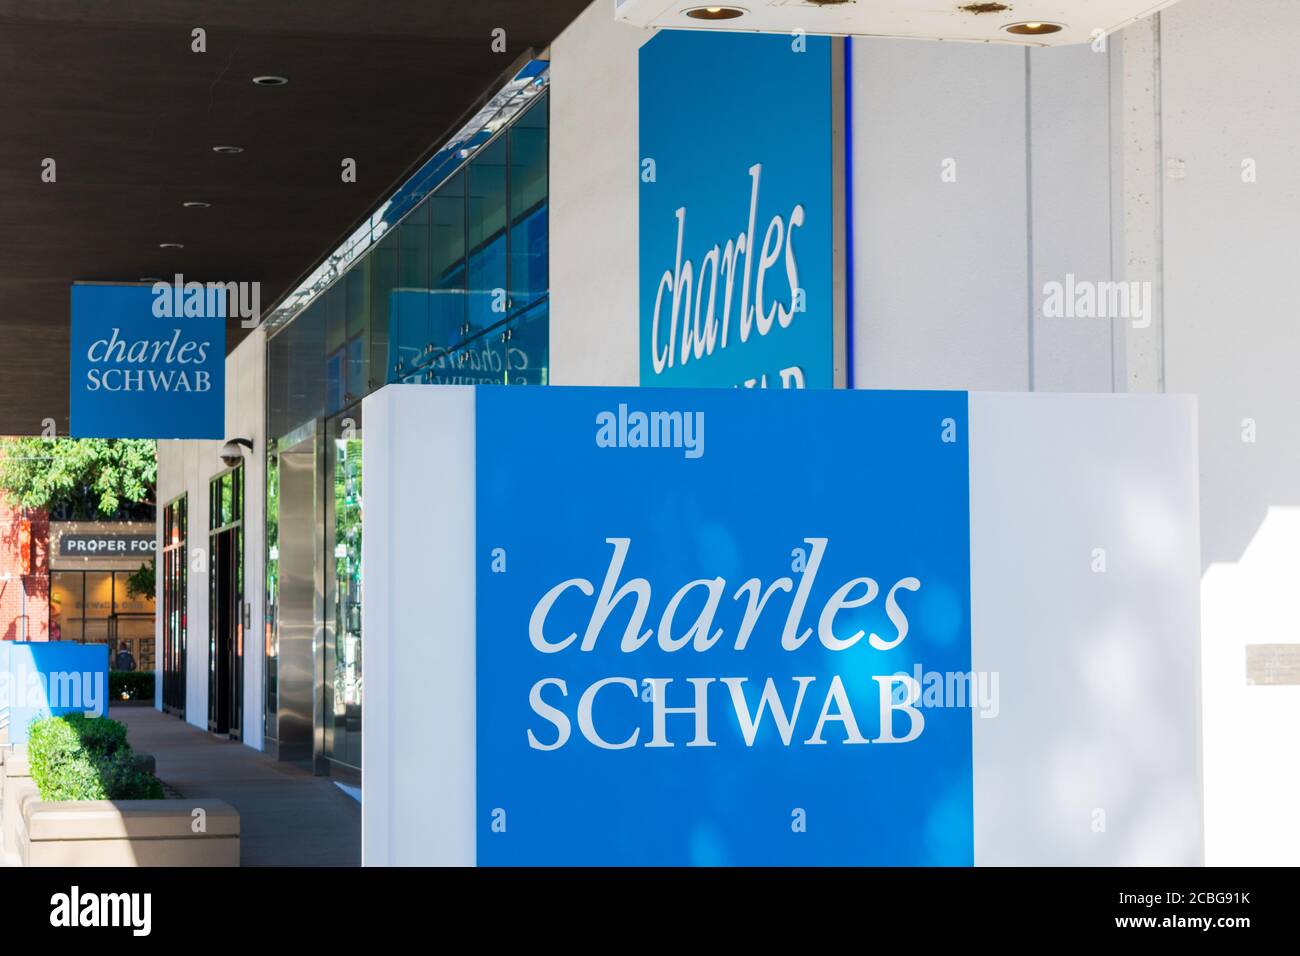 Charles Schwab signe sur le siège social.Charles Schwab Corporation est une banque américaine et une société de courtage d'actions - San Francisco, Californie, Etats-Unis - 2020 Banque D'Images